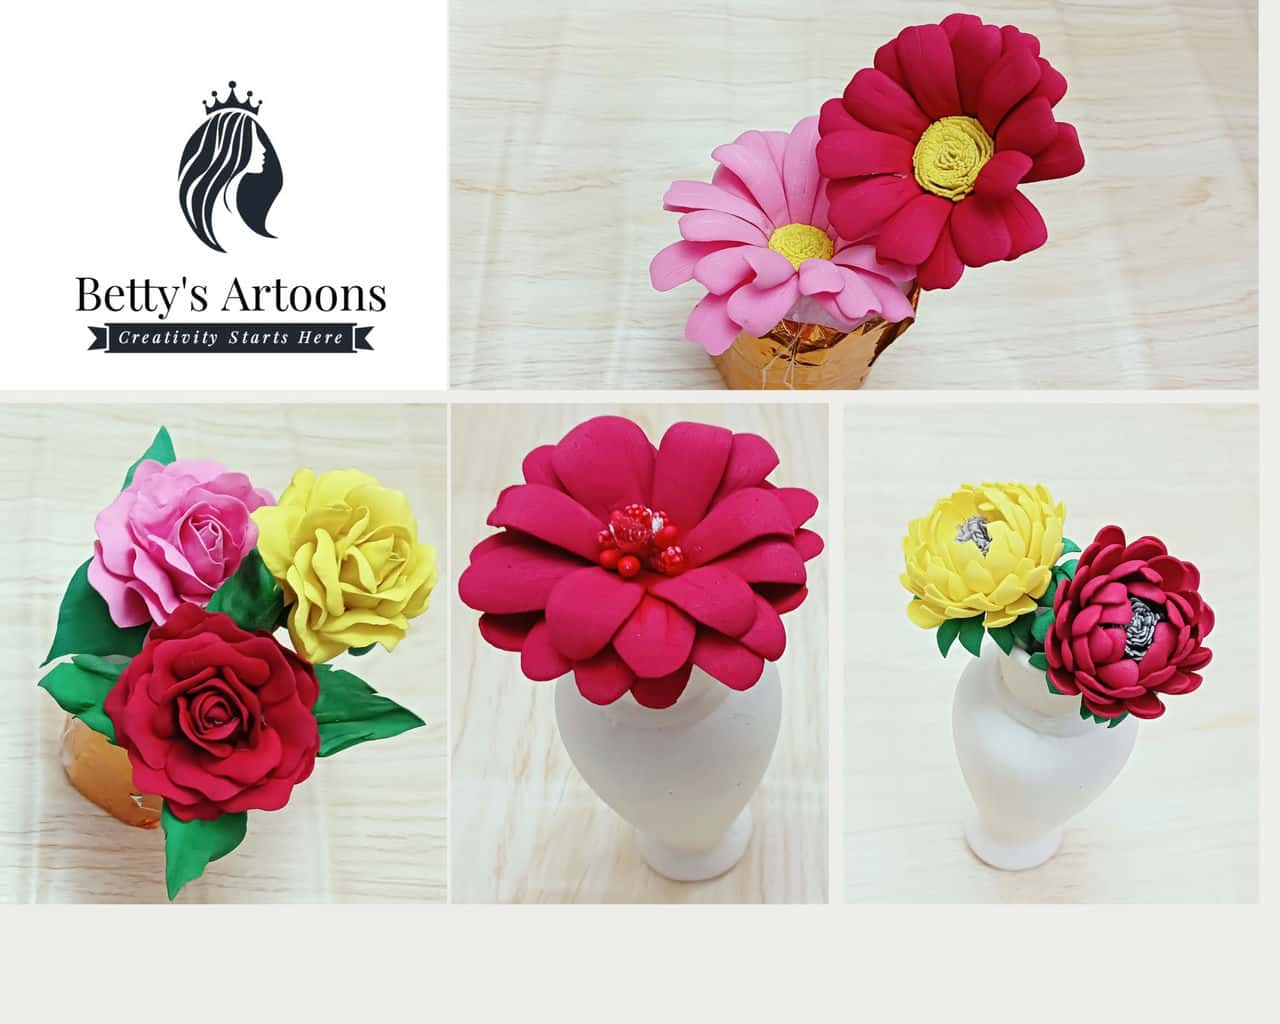 آموزش Craft Blooming Beauty: هنر ساخت گل های فوم خیره کننده را بیاموزید